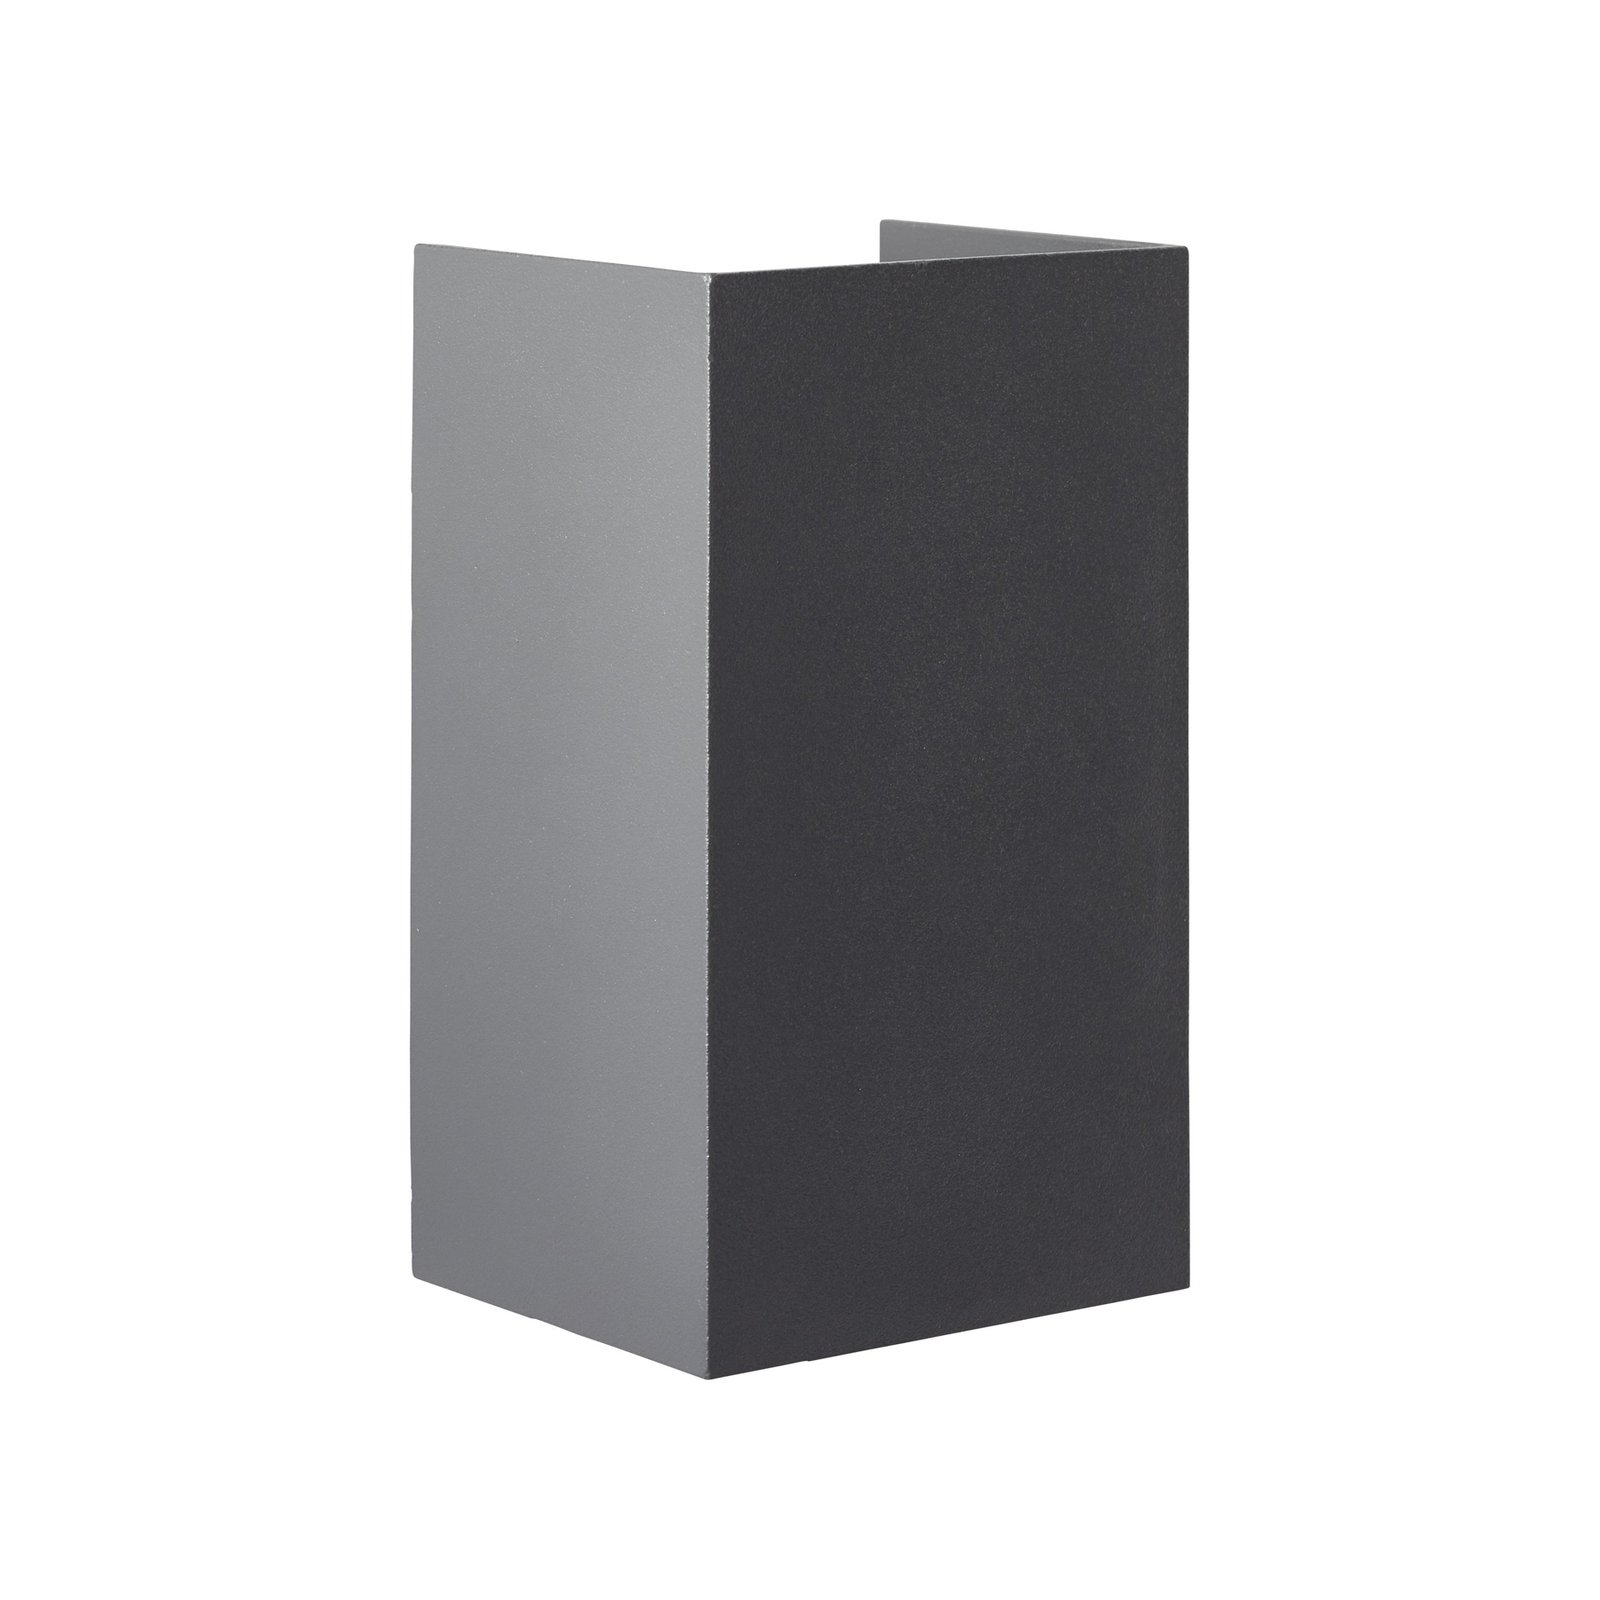 Aplique de exterior LED Hilly, altura 13,6 cm, gris oscuro, metal